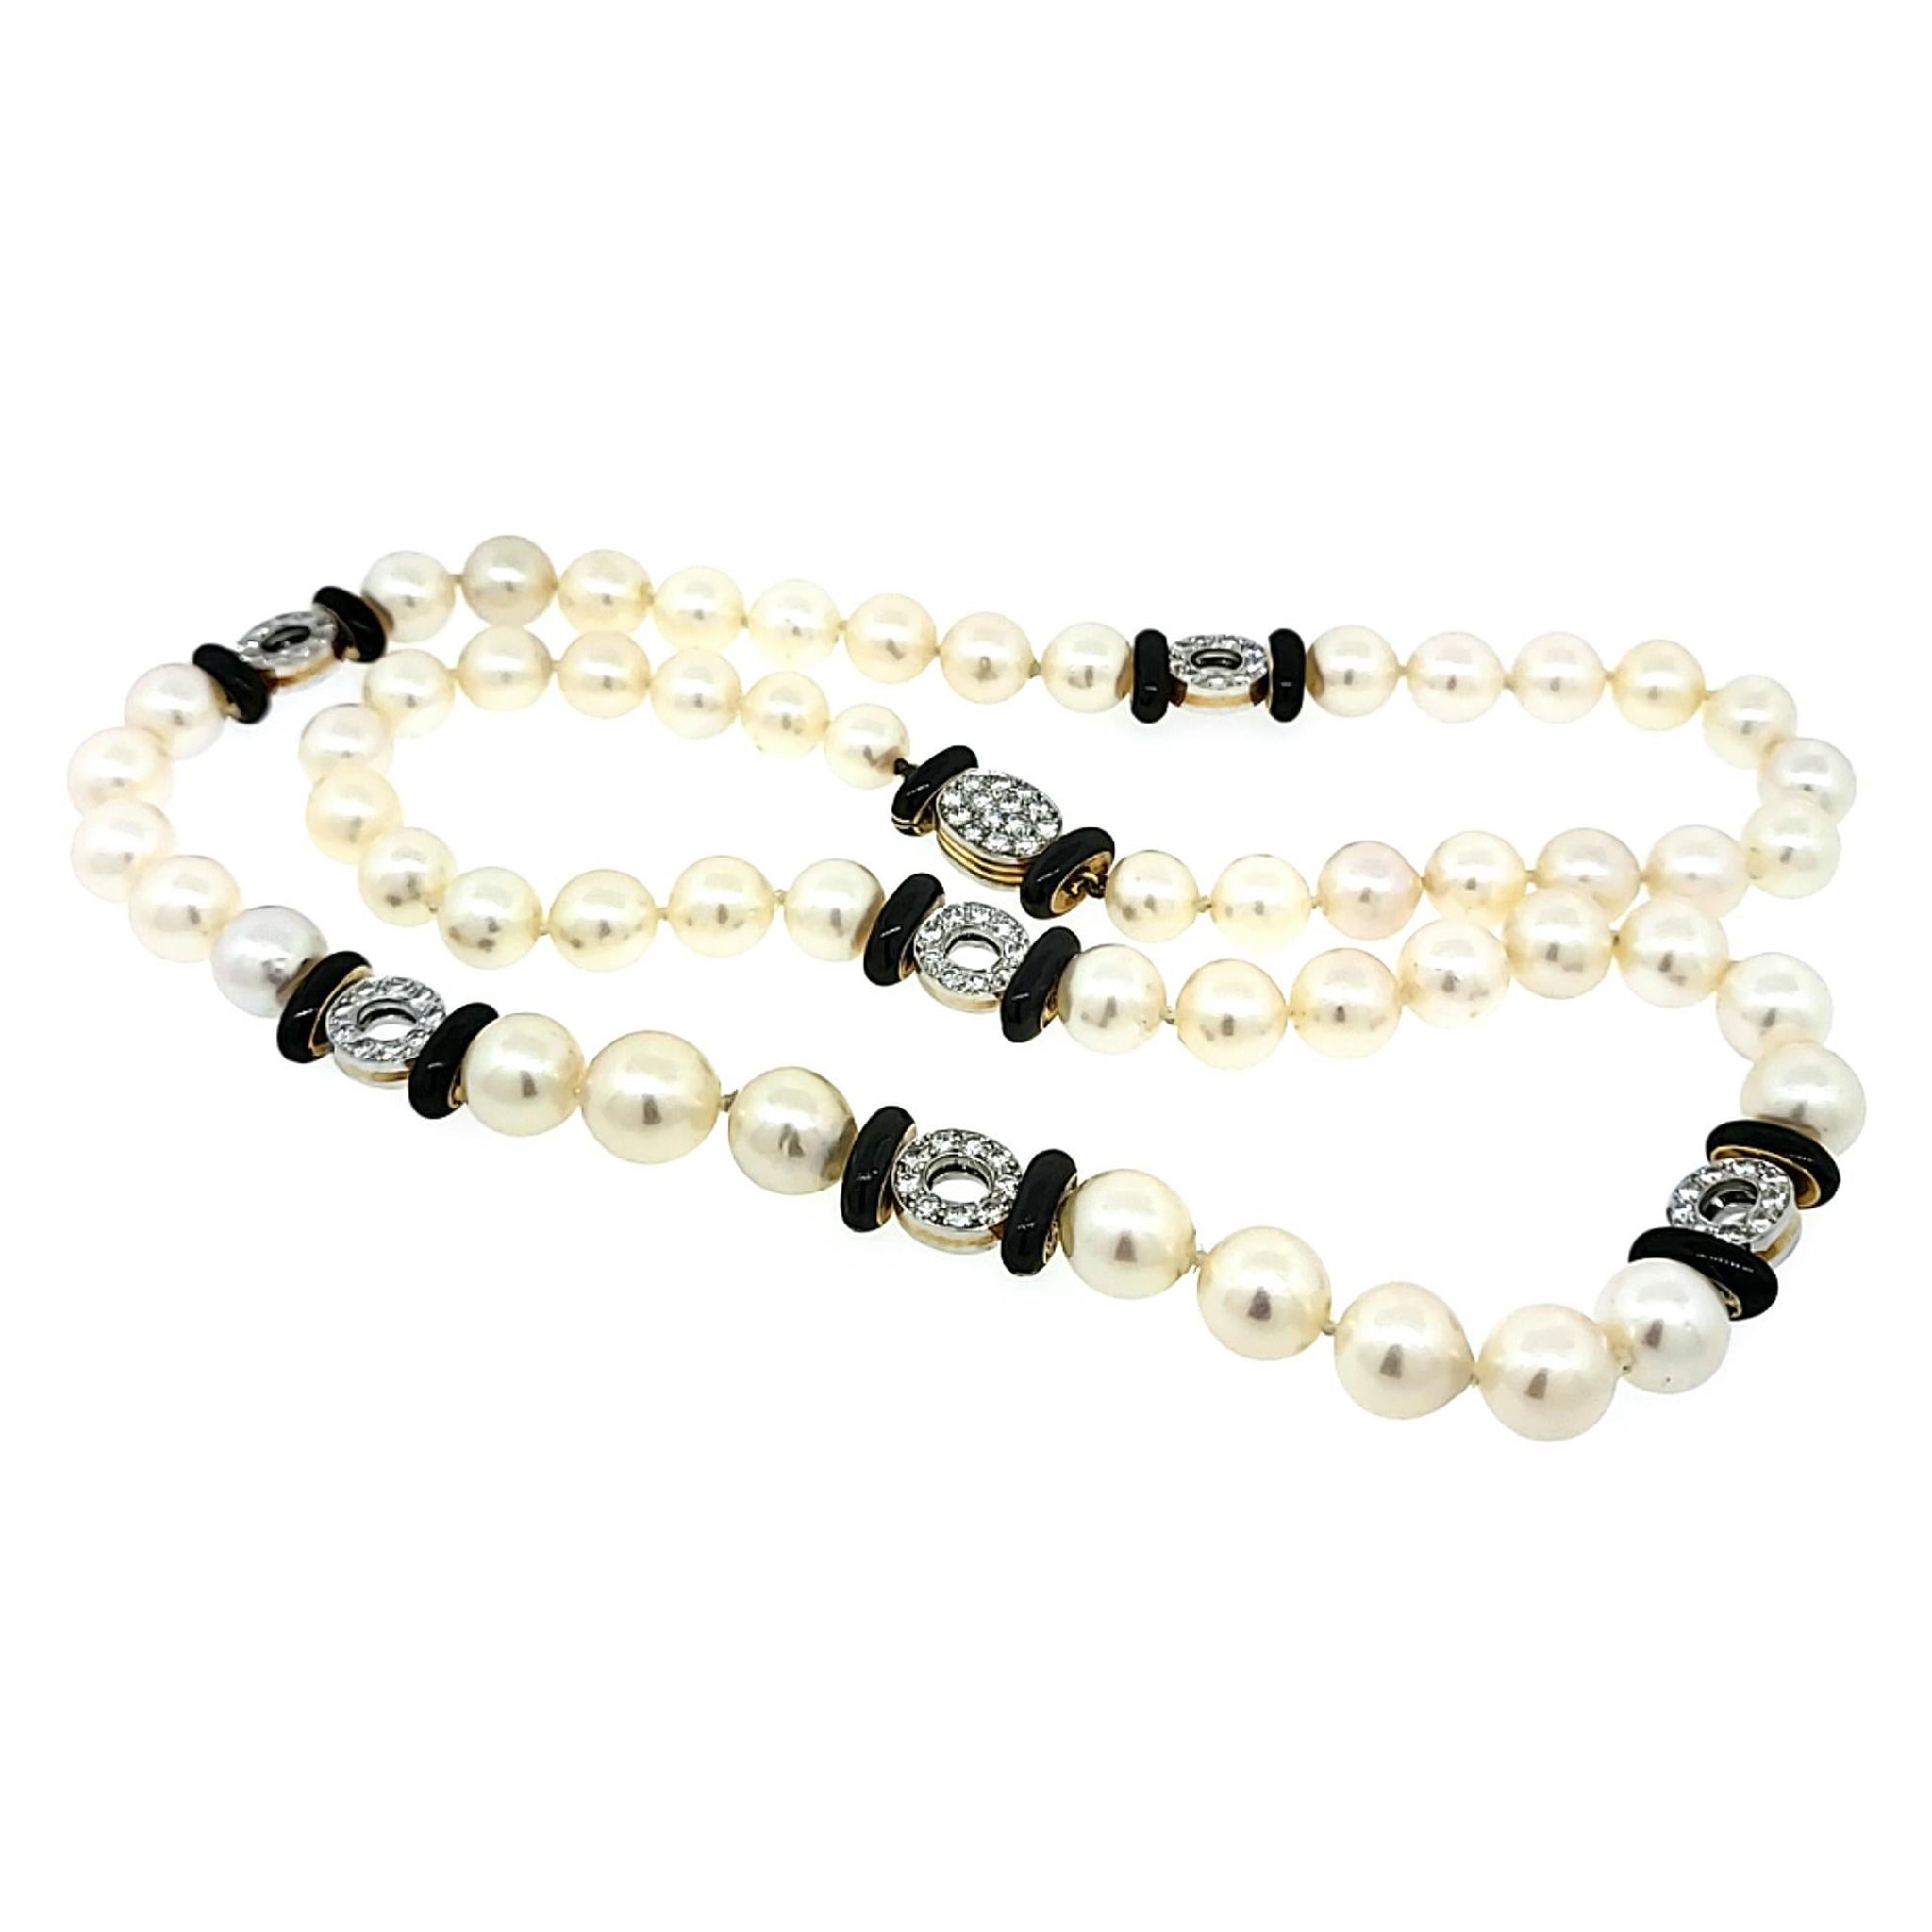 Long collier de perles de culture avec rondelles d'onyx et de diamants